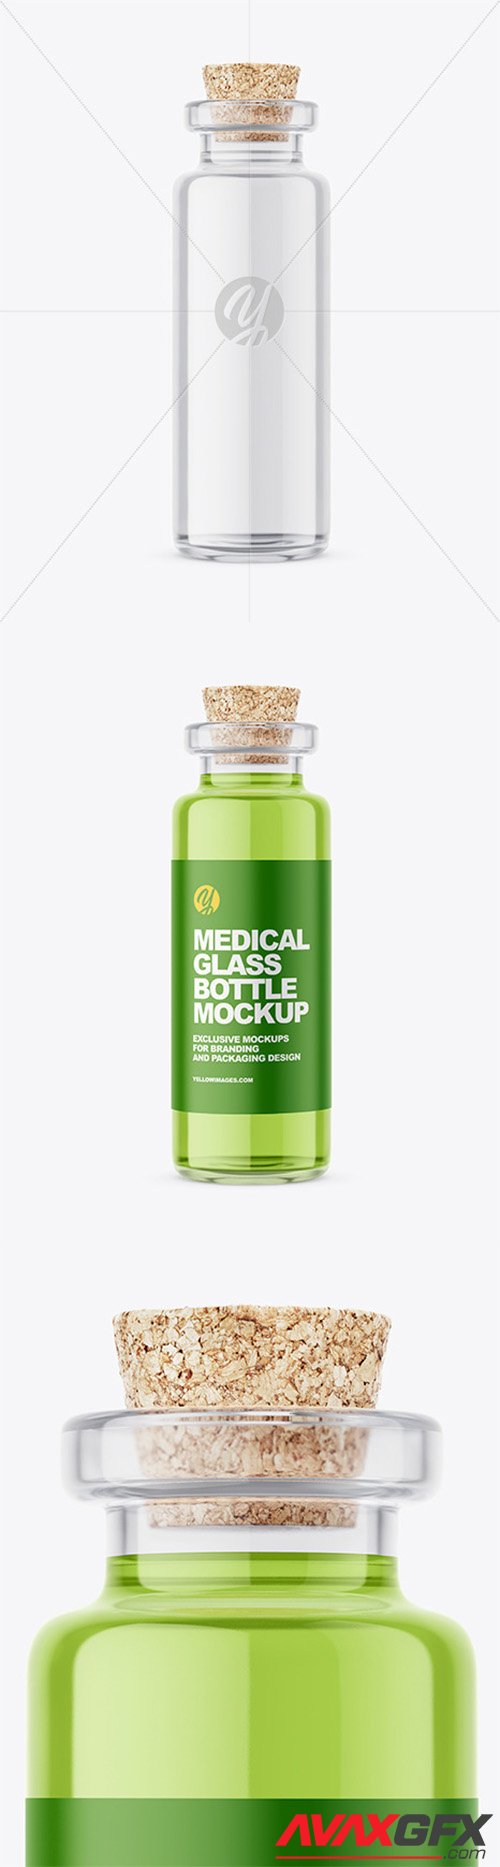 Glass Medical Bottle with Cork Mockup 57958